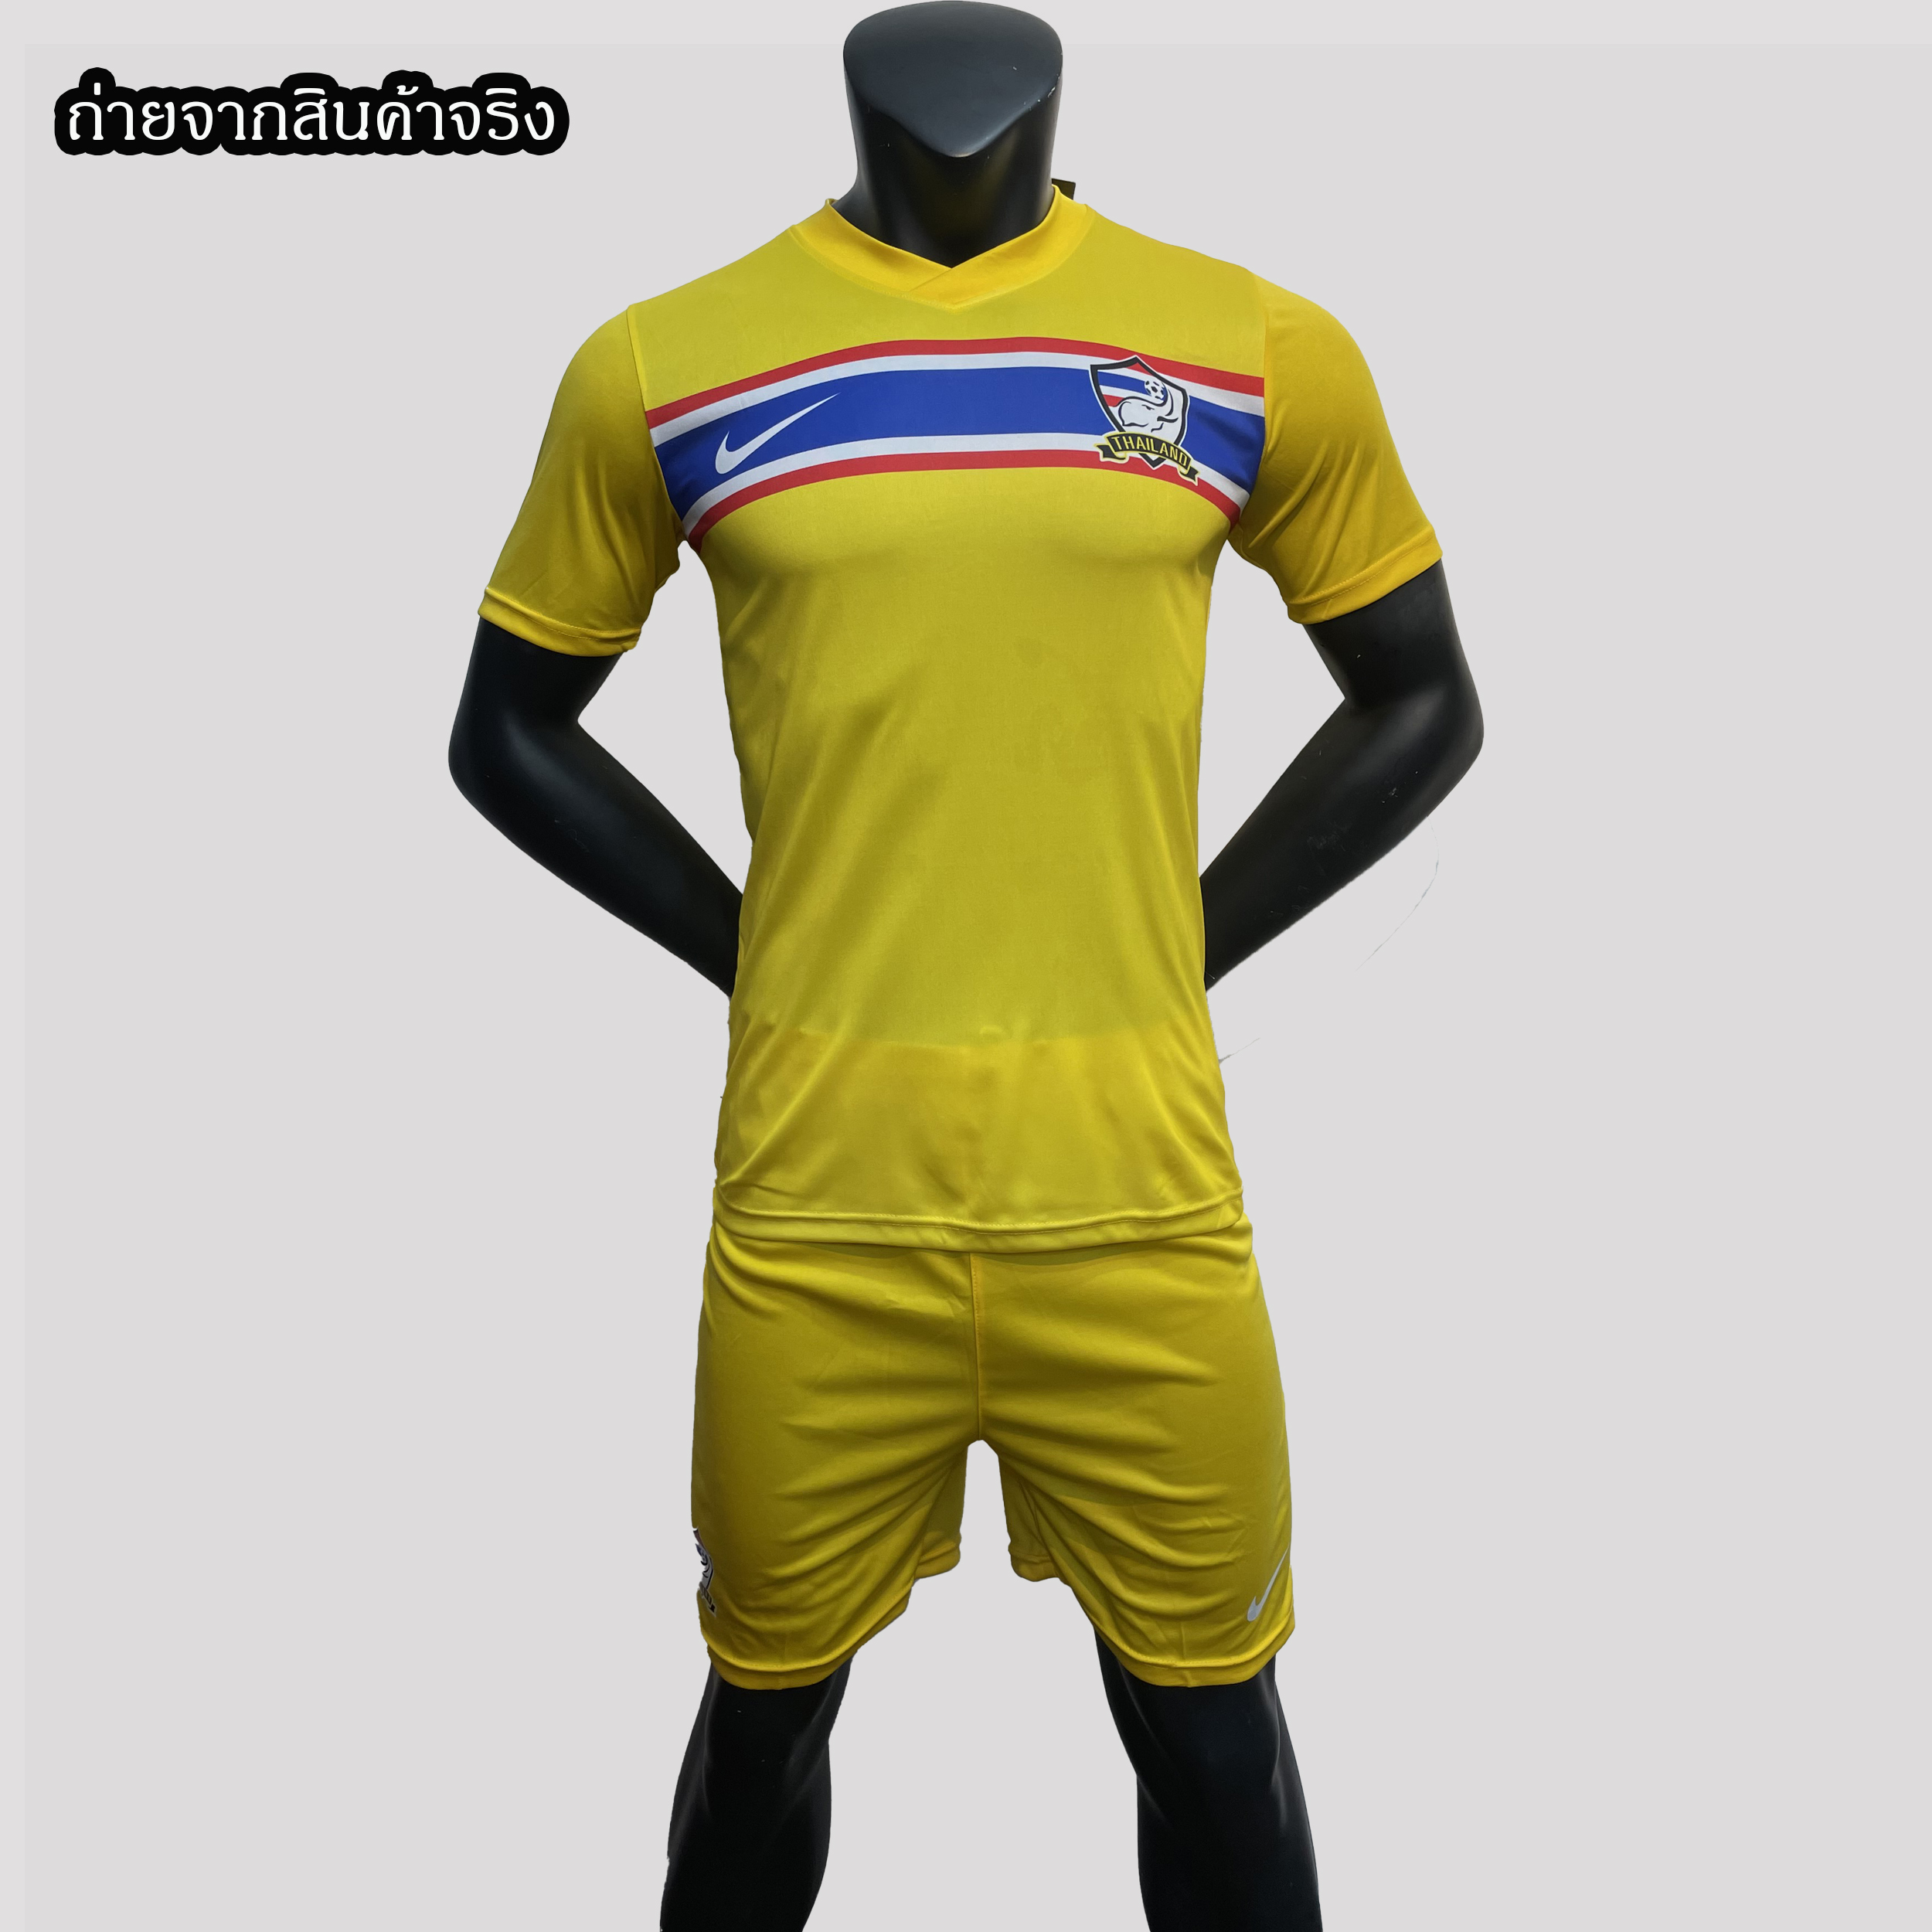 ชุดกีฬาผูู้ชาย ชุดบอล ชุดสโมสรฟุตบอล ทีมไทยแลนด์ ฤดูกาล 20/21 (เสื้อ+กางเกง) เนื้อผ้าโพลีเอสเตอร์ เกรด A ไม่ใช่งานโรงเกลือแน่นอน การันตี